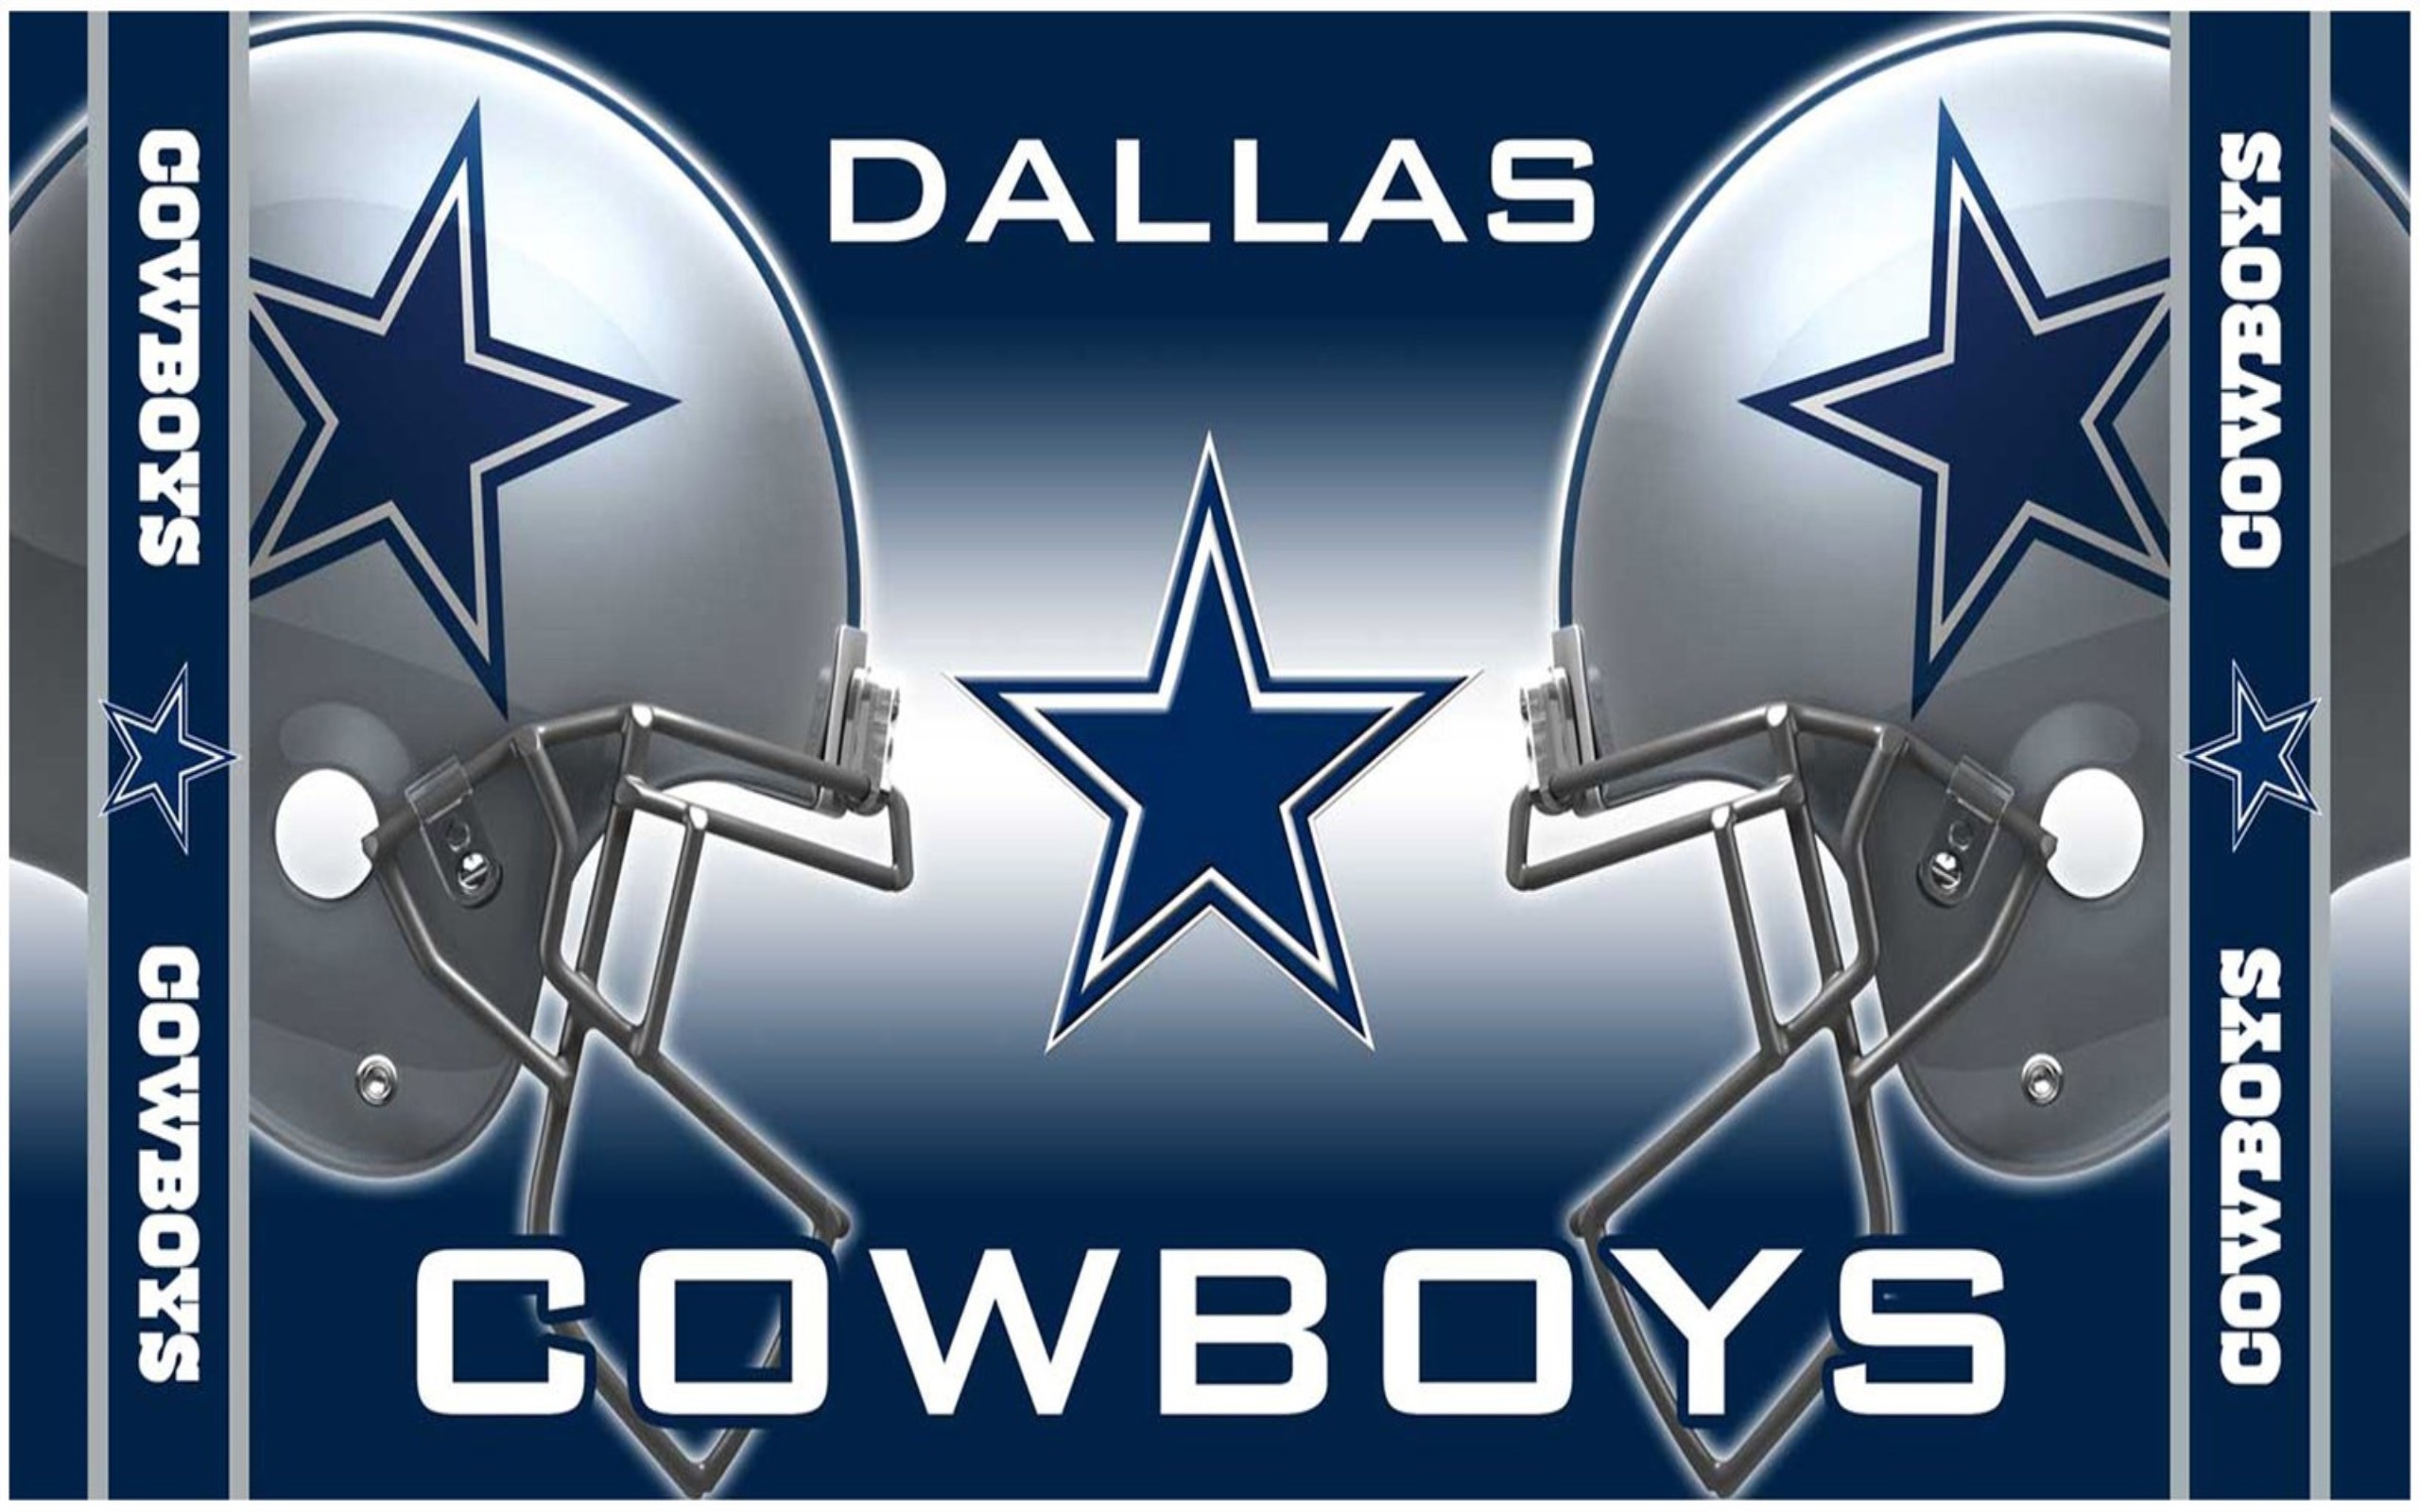 2560x1600 Dallas Cowboys Image.